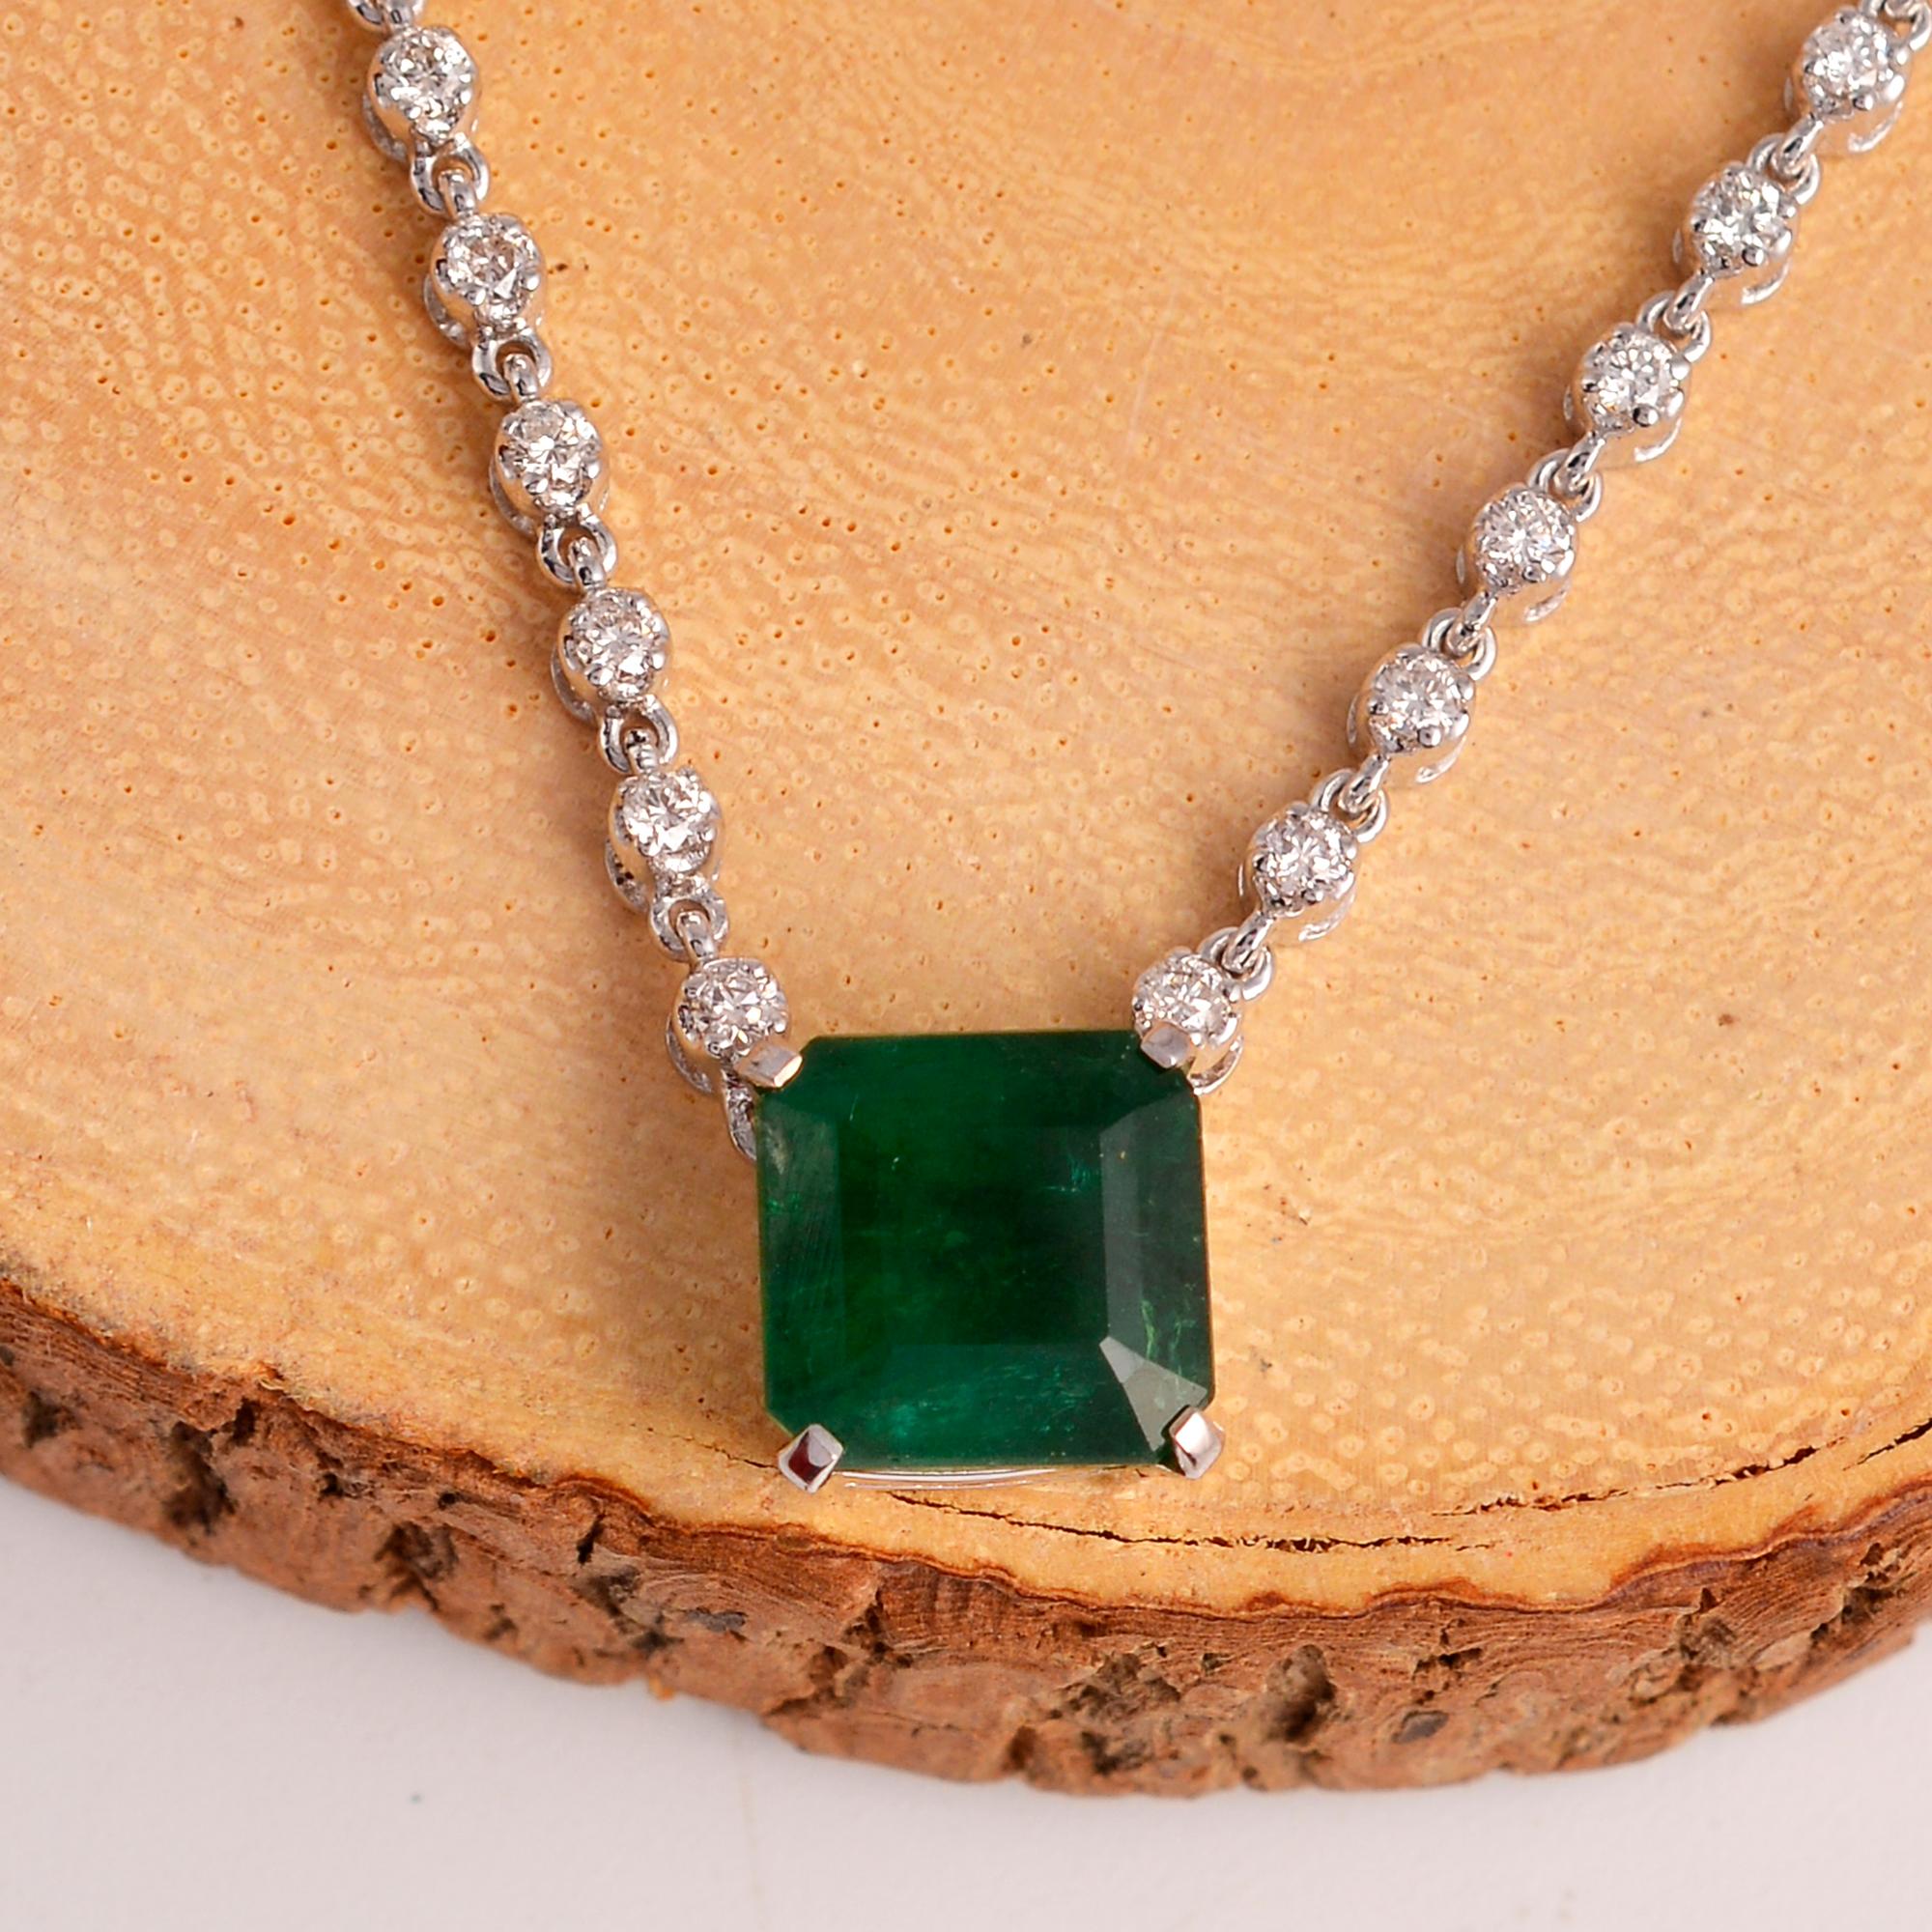 Um den Smaragd herum befinden sich schillernde Diamanten, die in einer zierlichen Anordnung gefasst sind, um die Brillanz zu verstärken und die Anziehungskraft zu erhöhen. Jeder Diamant wird von Hand nach seiner außergewöhnlichen Qualität und